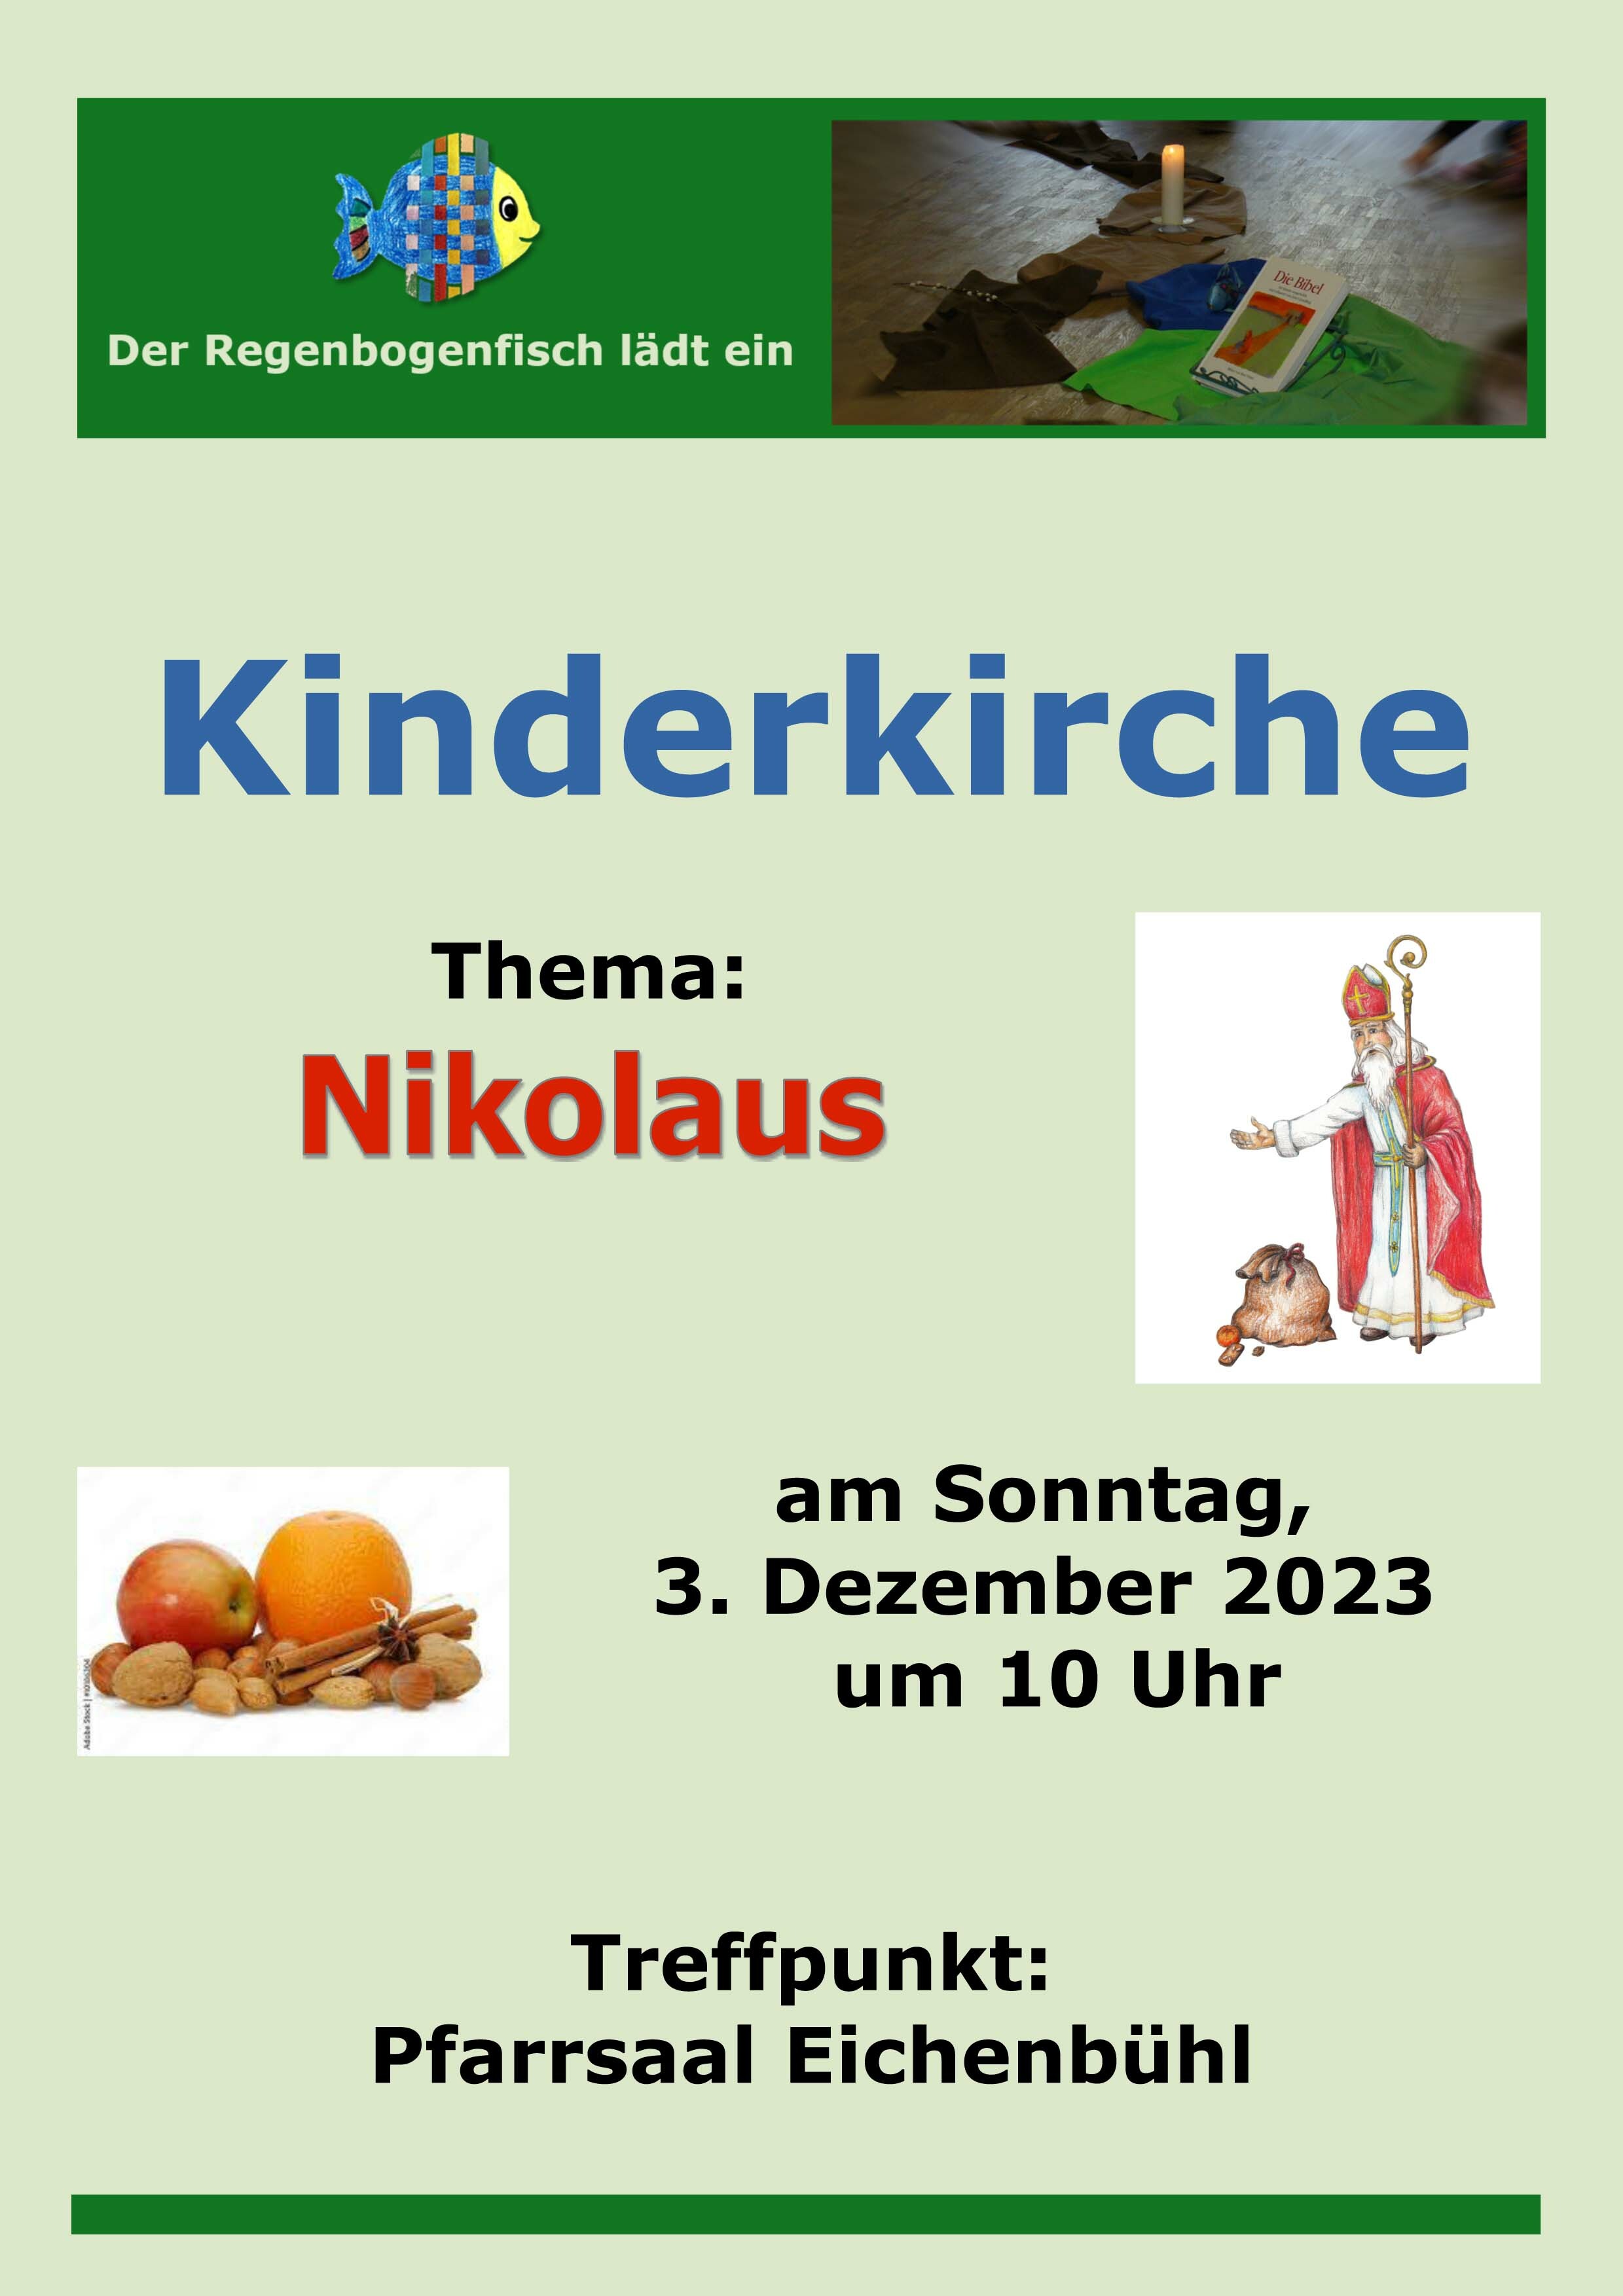 2023 NikolausKinderkirche